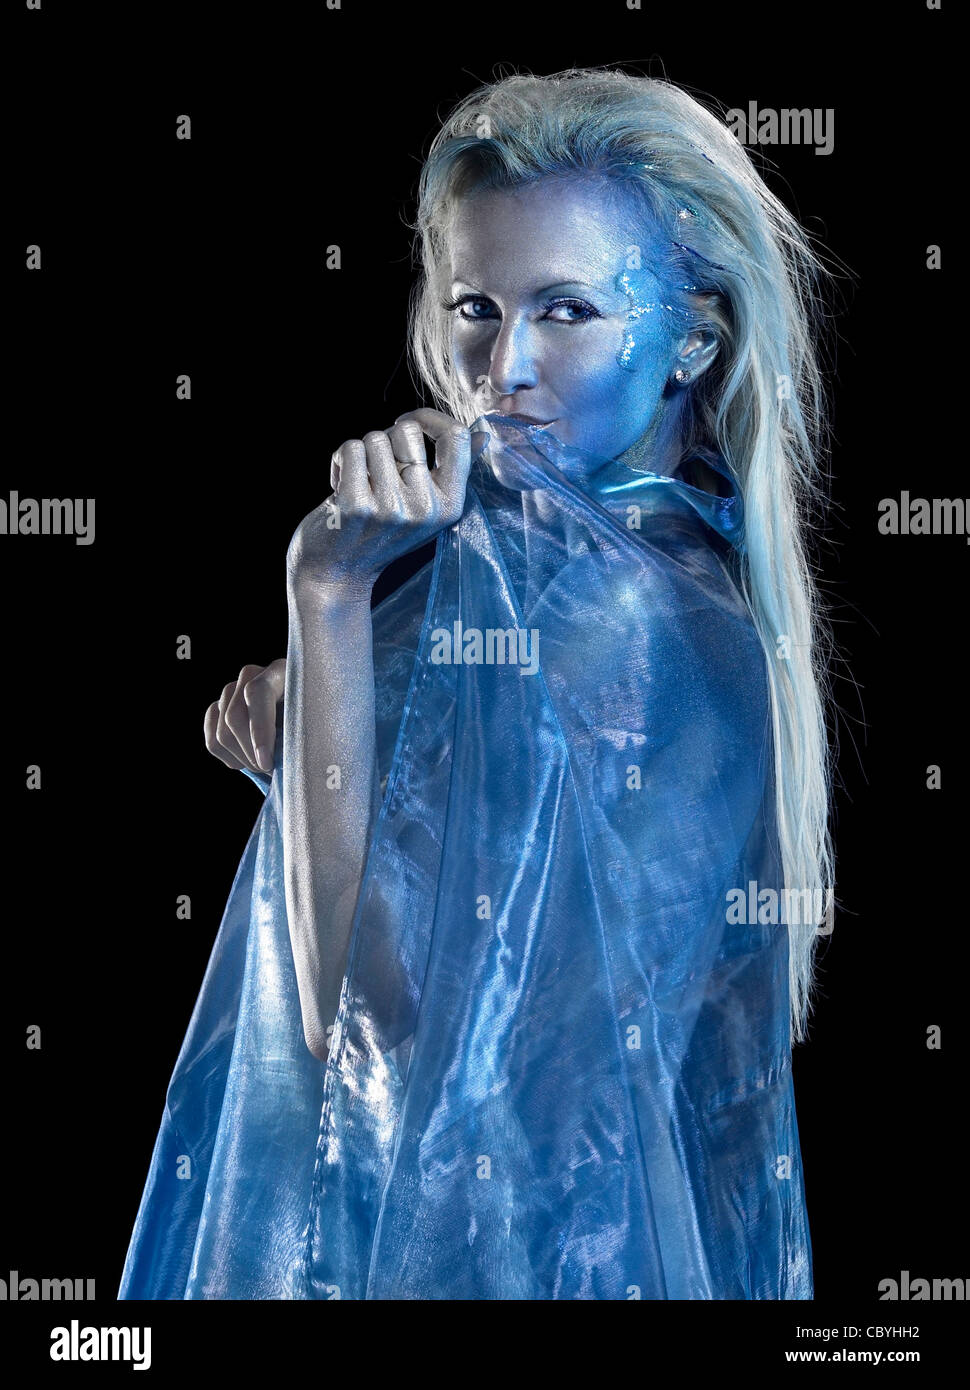 Thème sirène mystique montrant une femme blonde bodypainted enduites de tissus bleu translucide, la photographie de studio en noir retour Banque D'Images